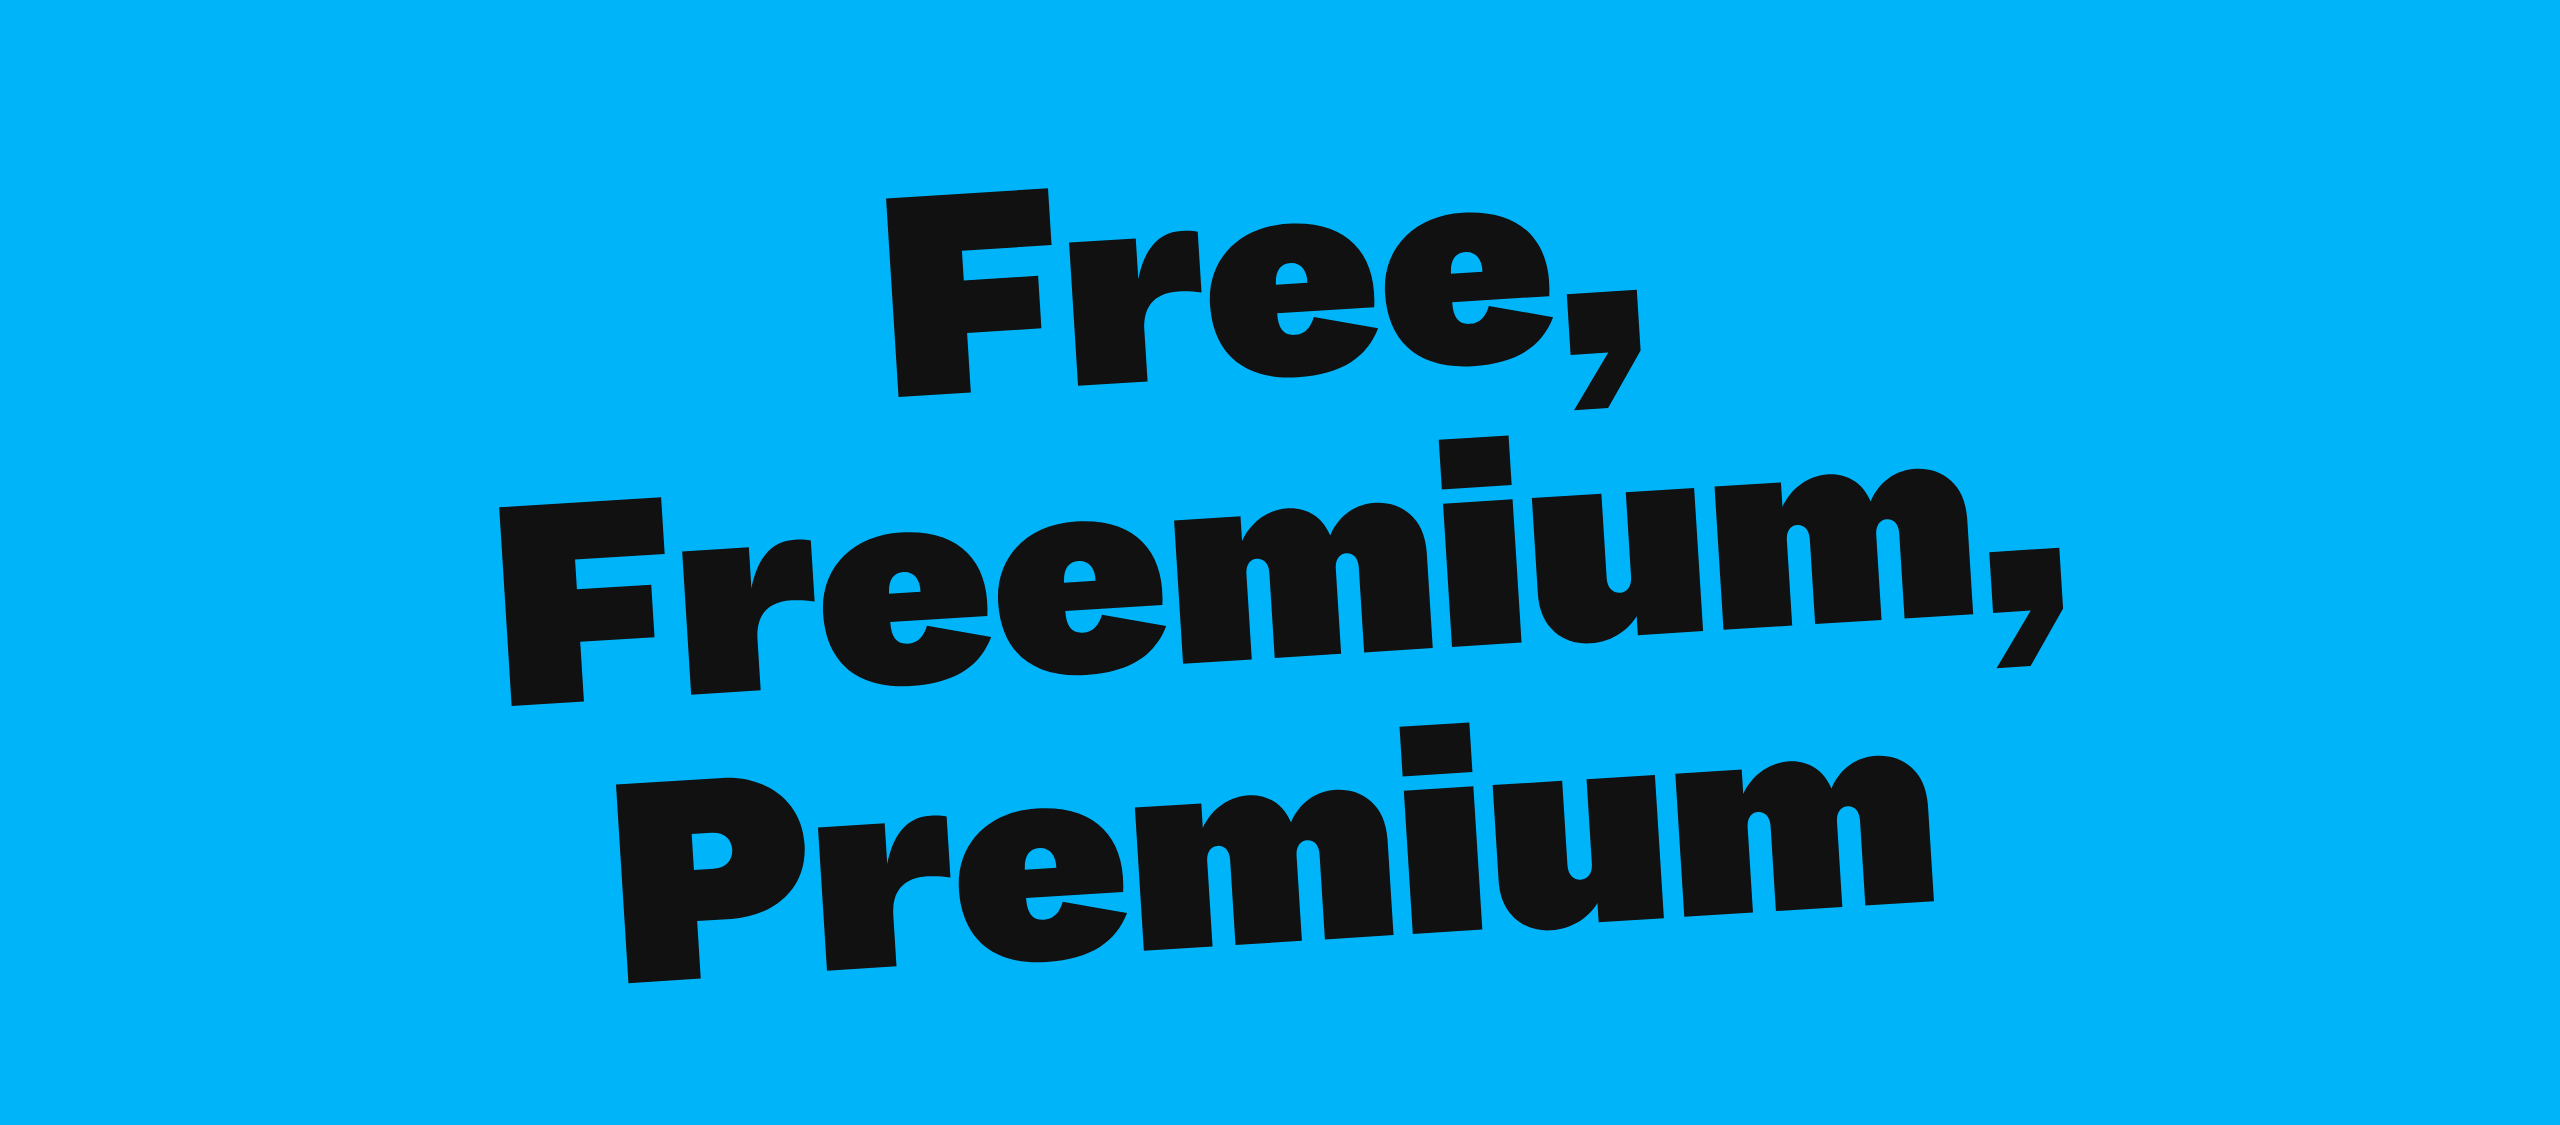 Free, Freemium, Premium (VUT Indie Days)